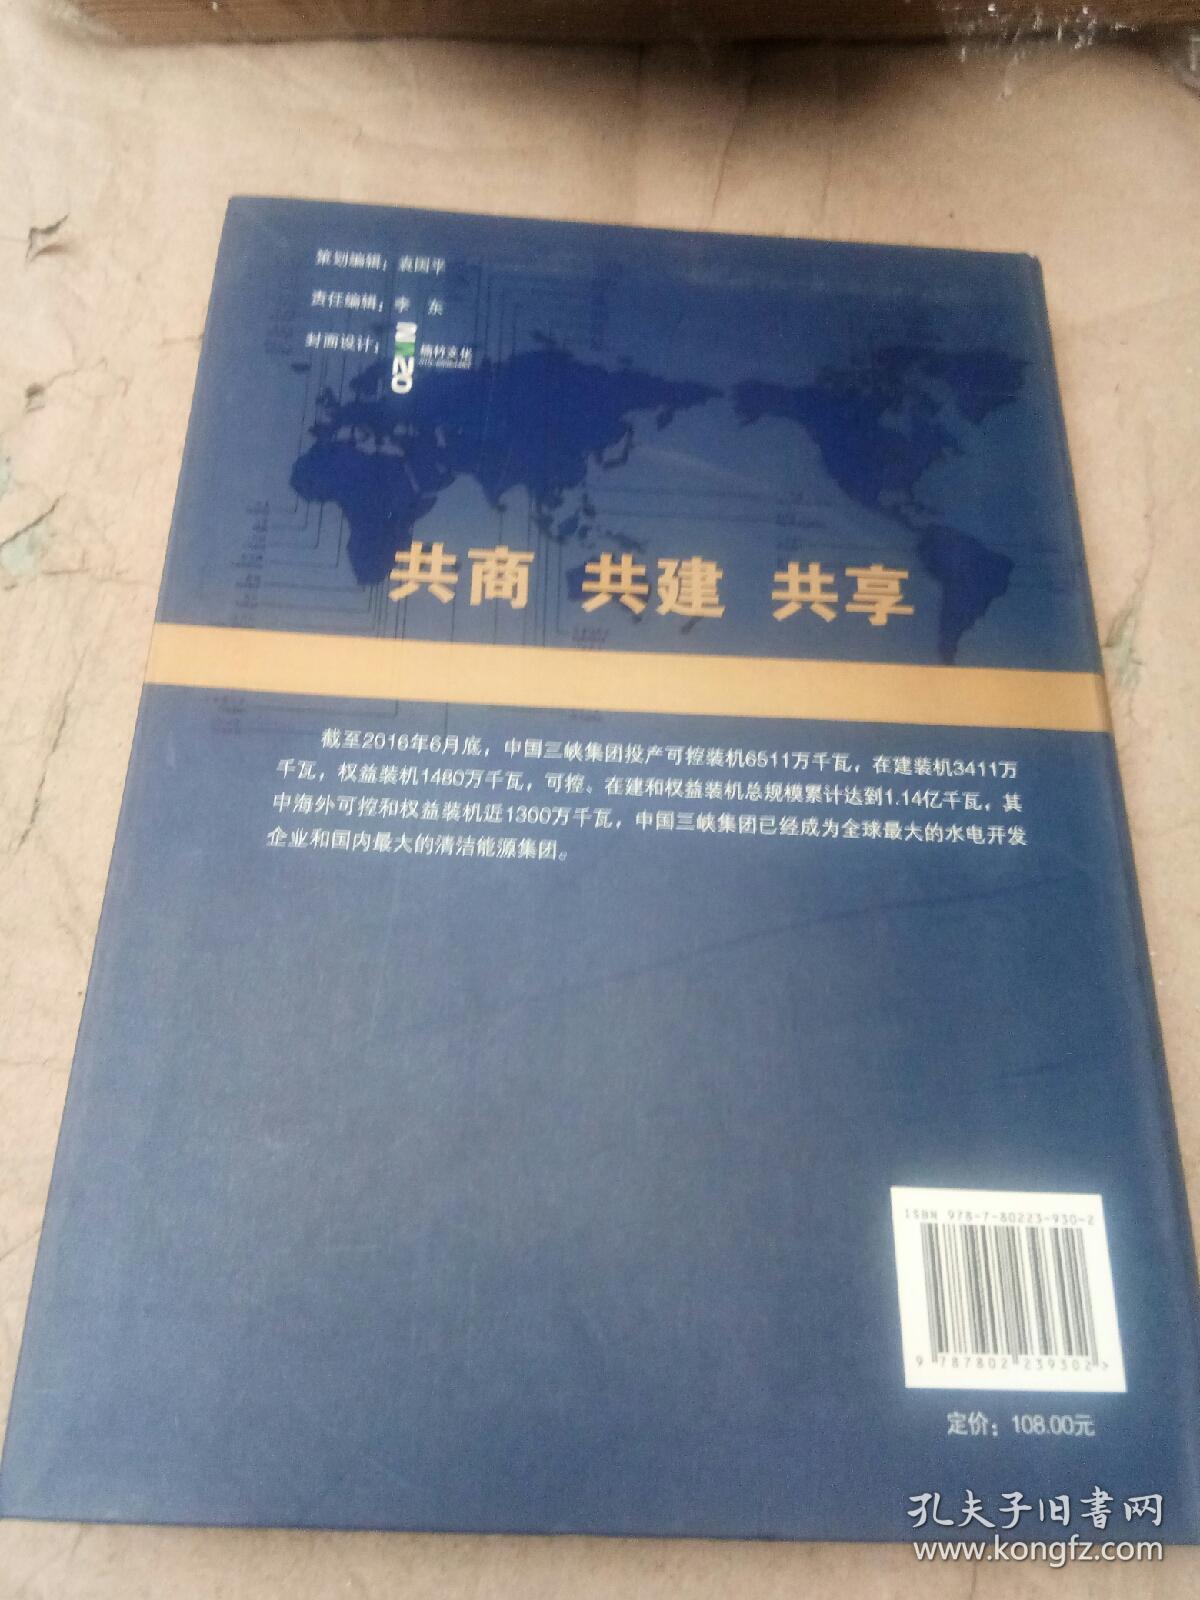 让世界共享三峡经验 : 中国三峡集团国际业务发展纪实